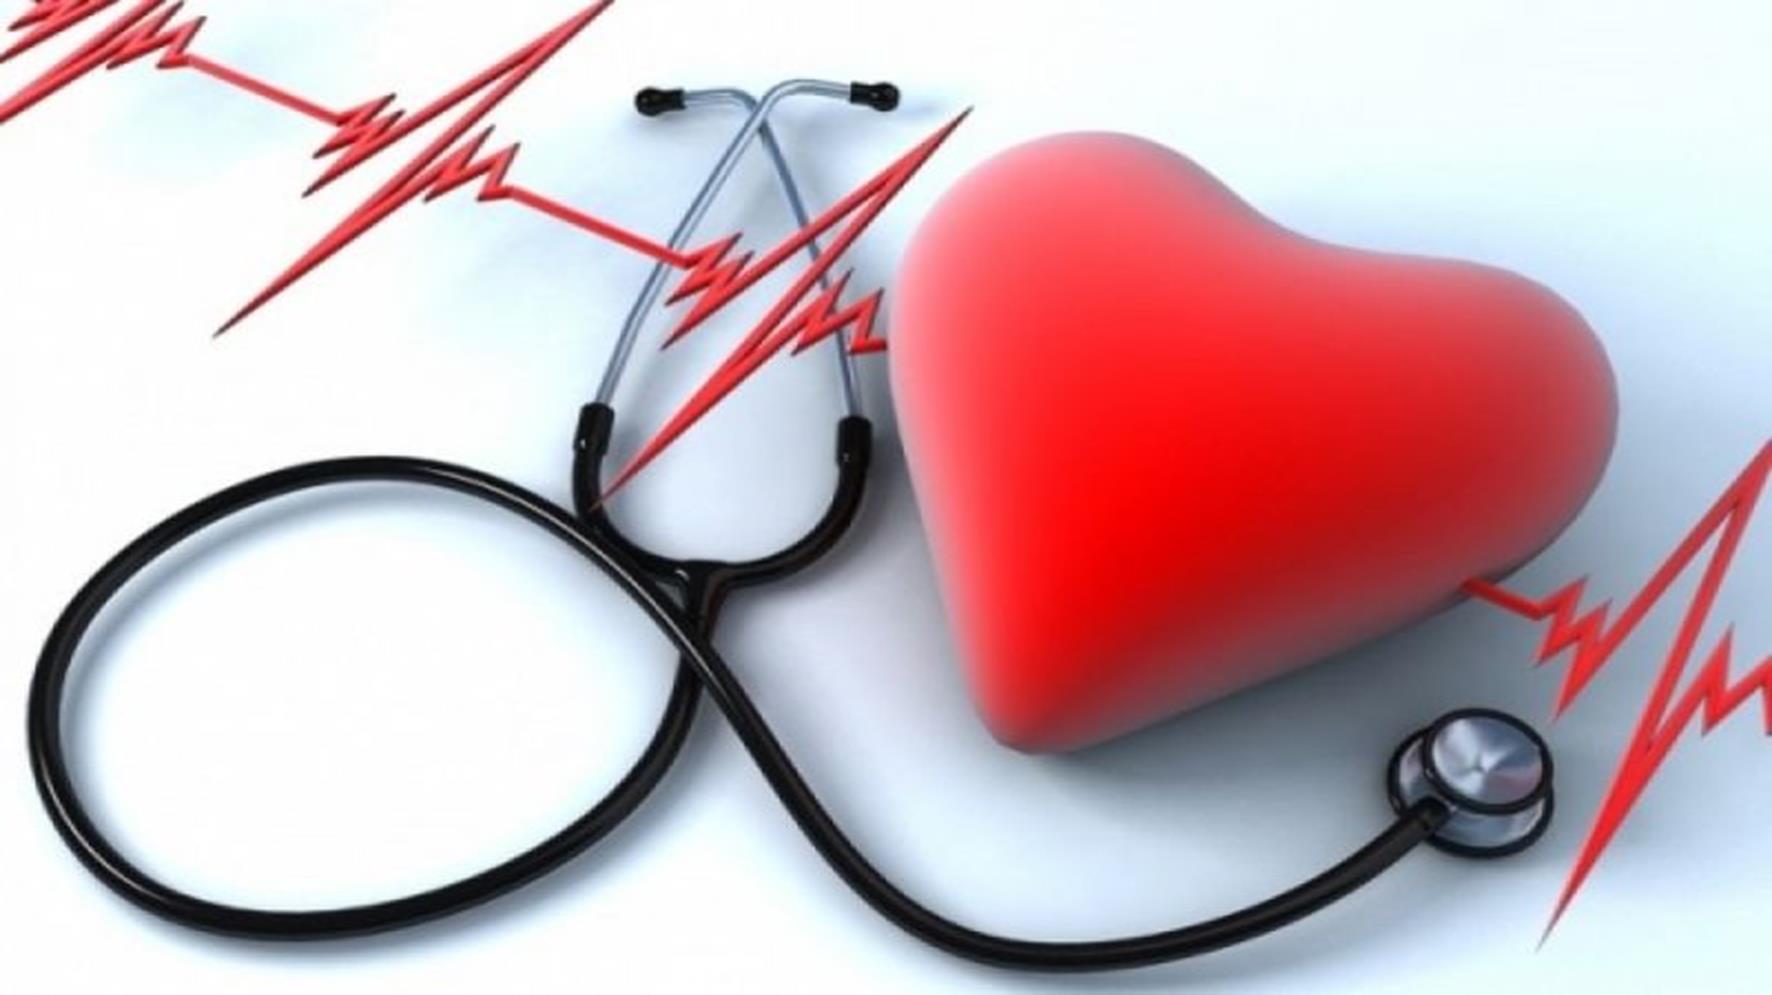 Χαμηλές δόσεις ακτινοβολίας μπορούν να βλάψουν το καρδιαγγειακό